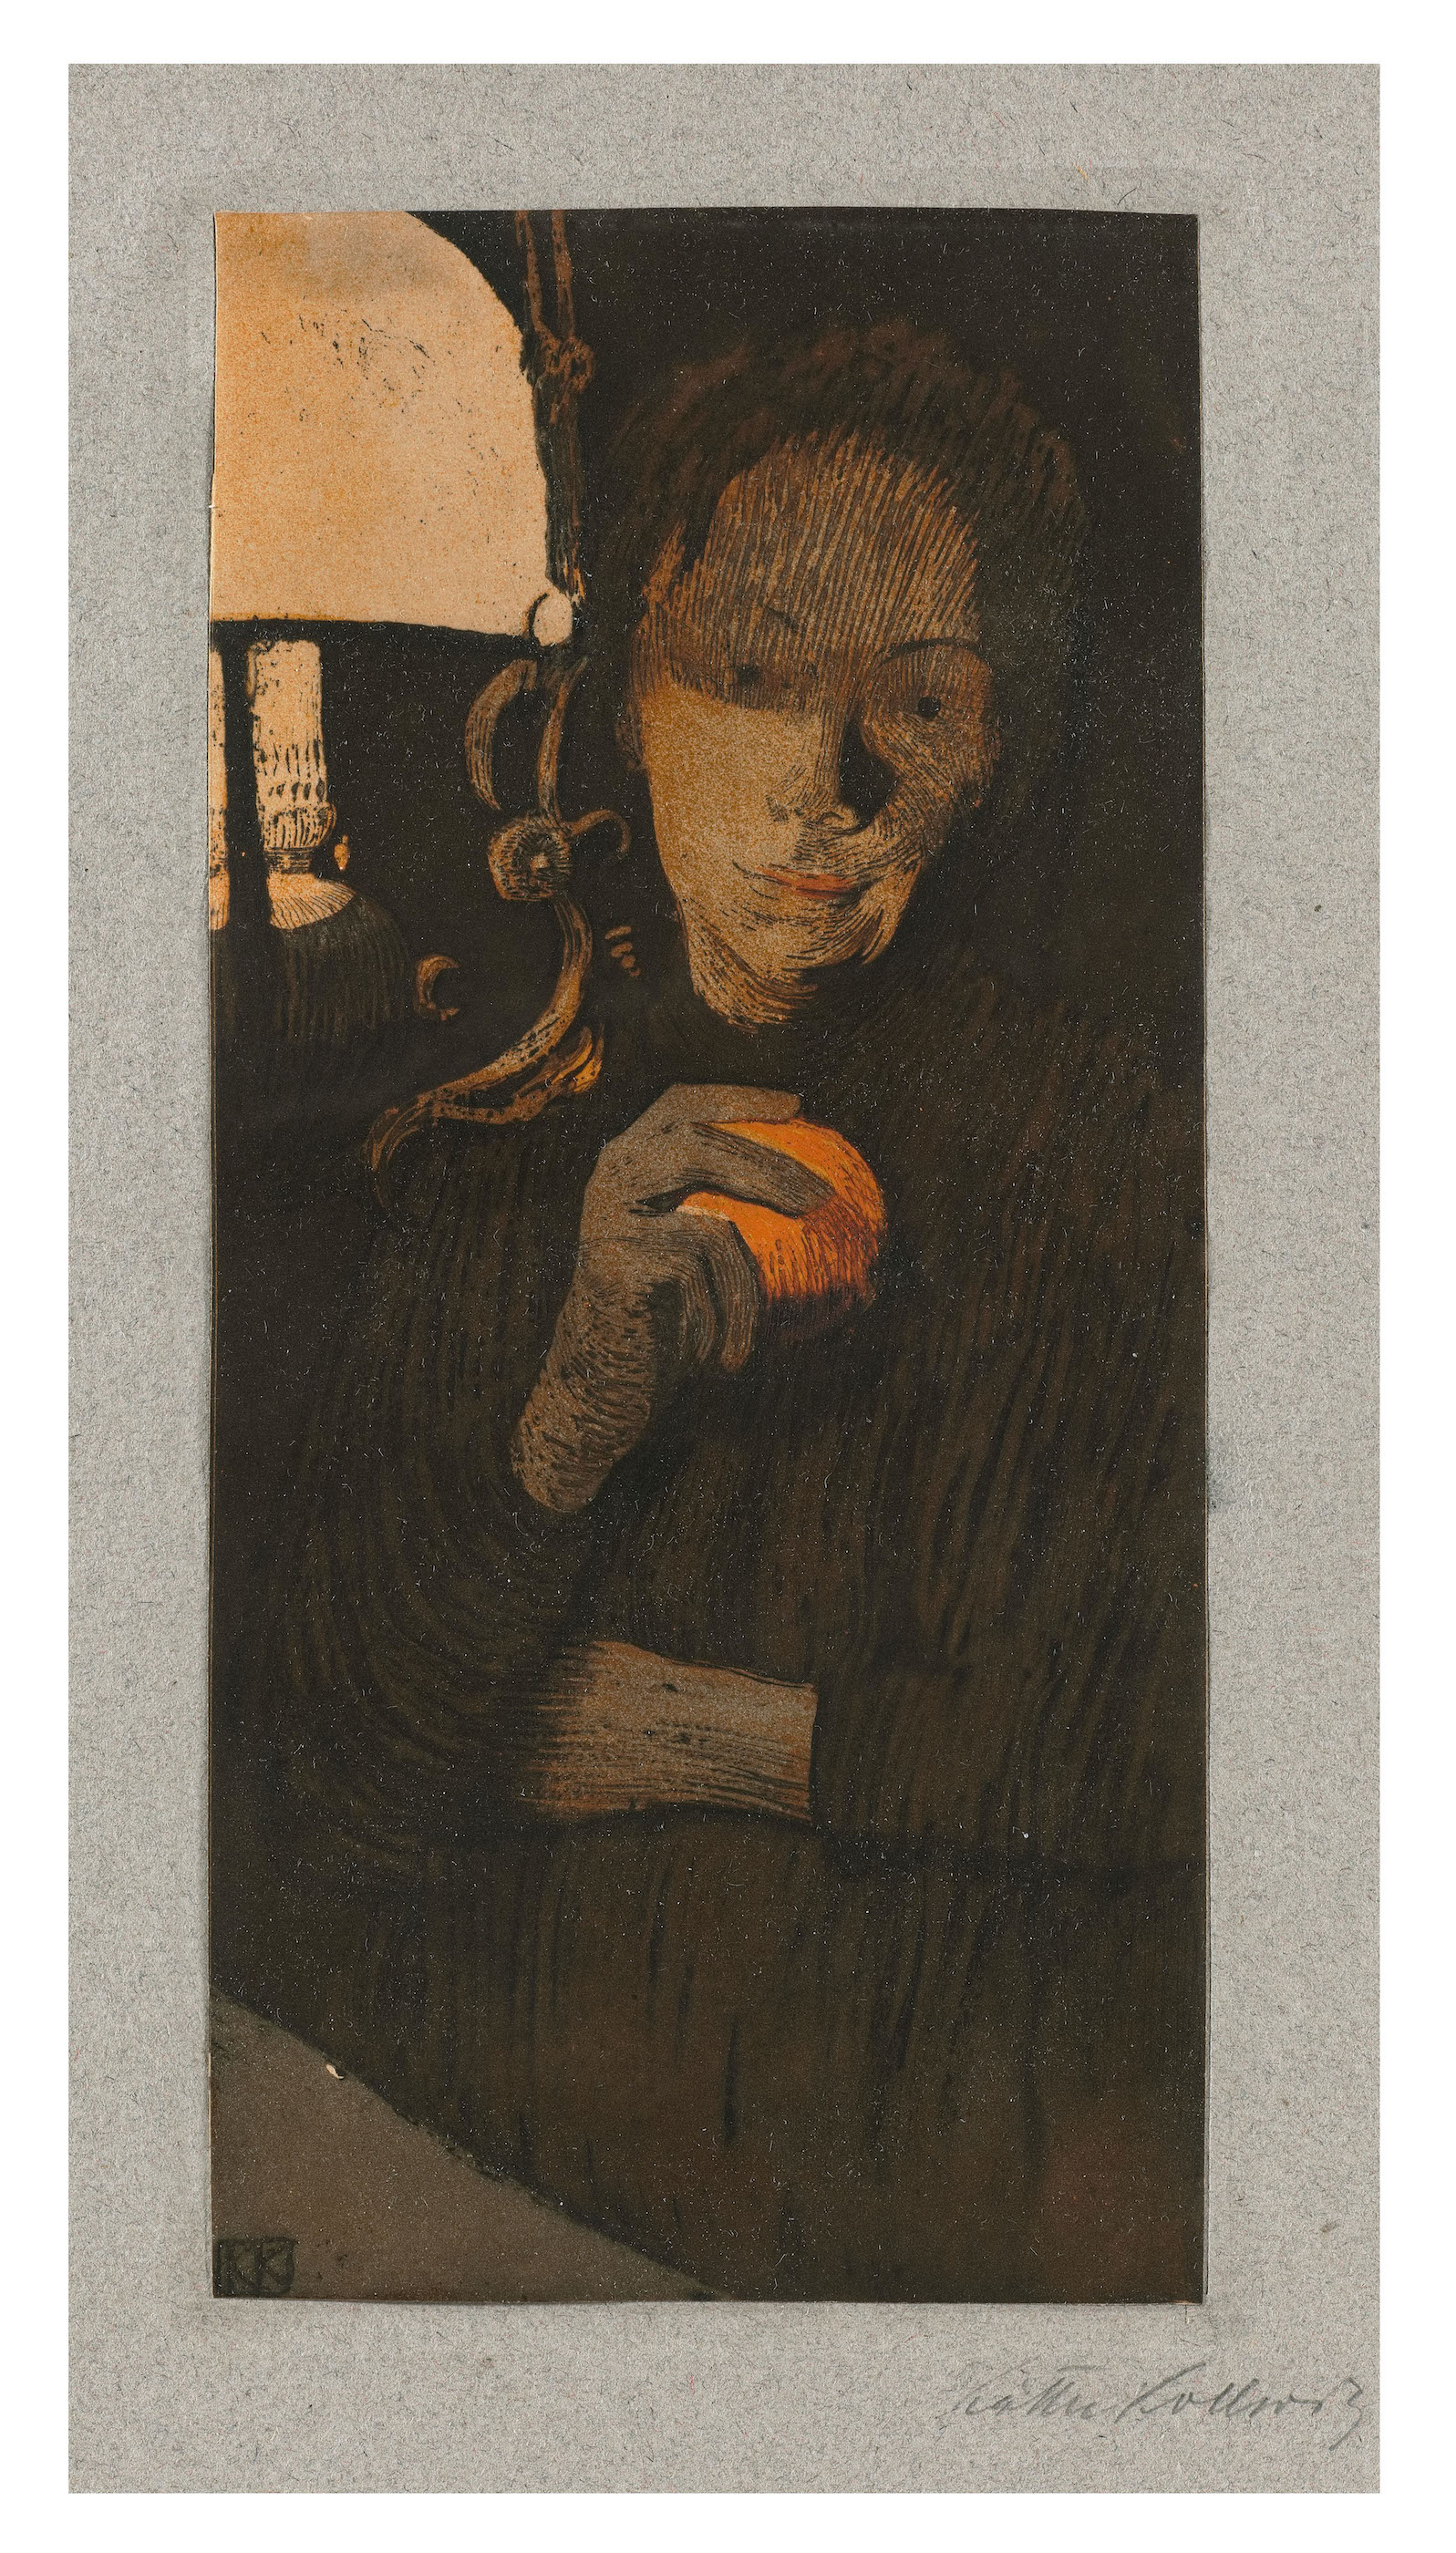 오렌지를 든 여인(Woman with Orange) by Käthe Kollwitz - 1901 - 23.1 cm x 11.2 cm 